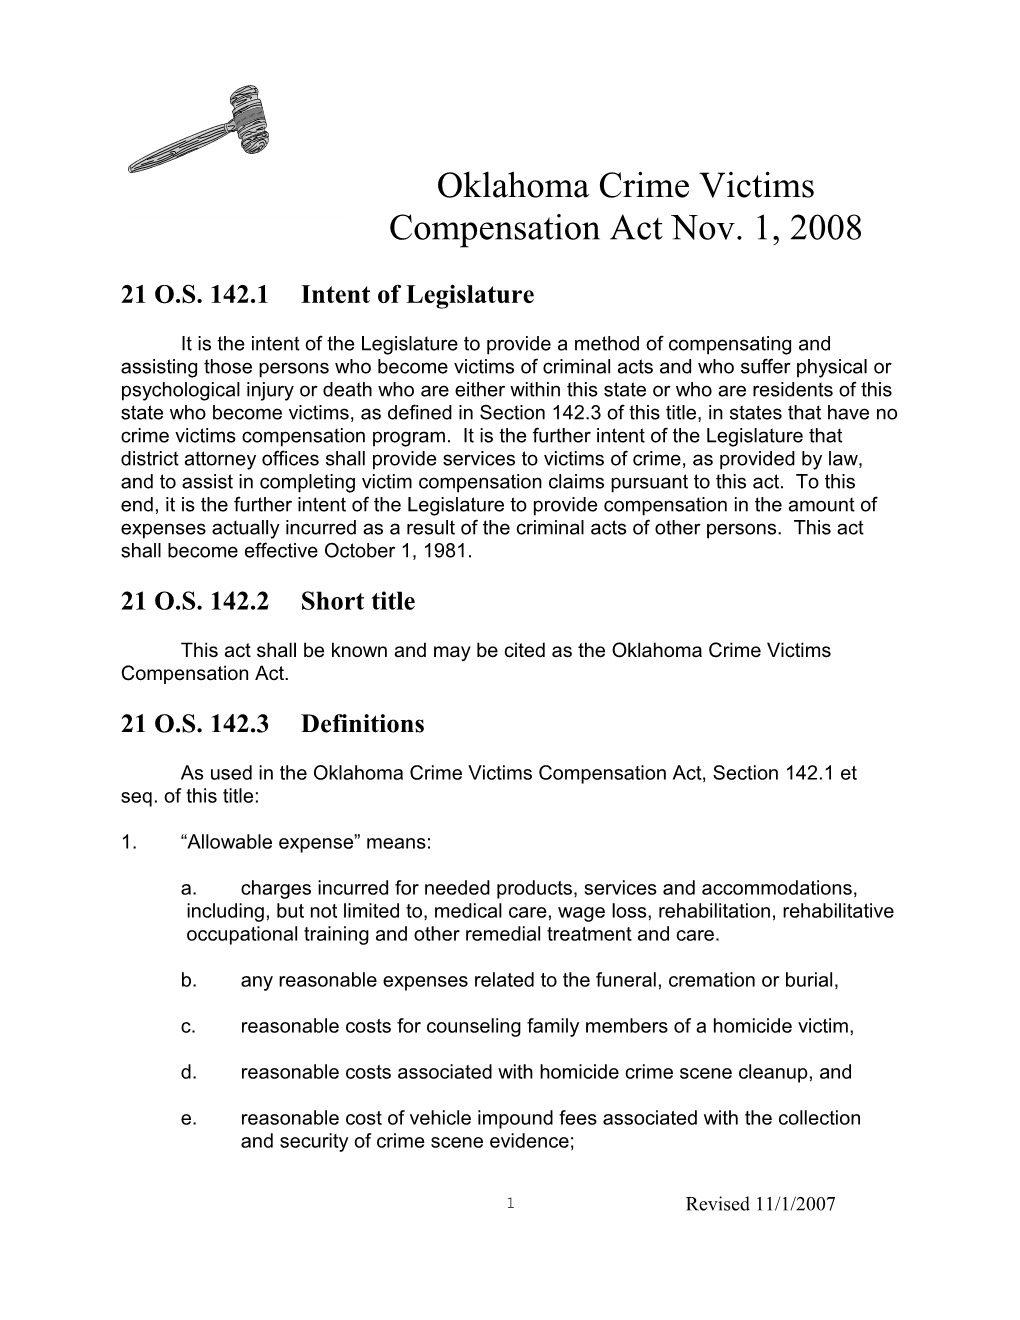 Oklahoma Crime Victims Compensation Actnov. 1, 2008